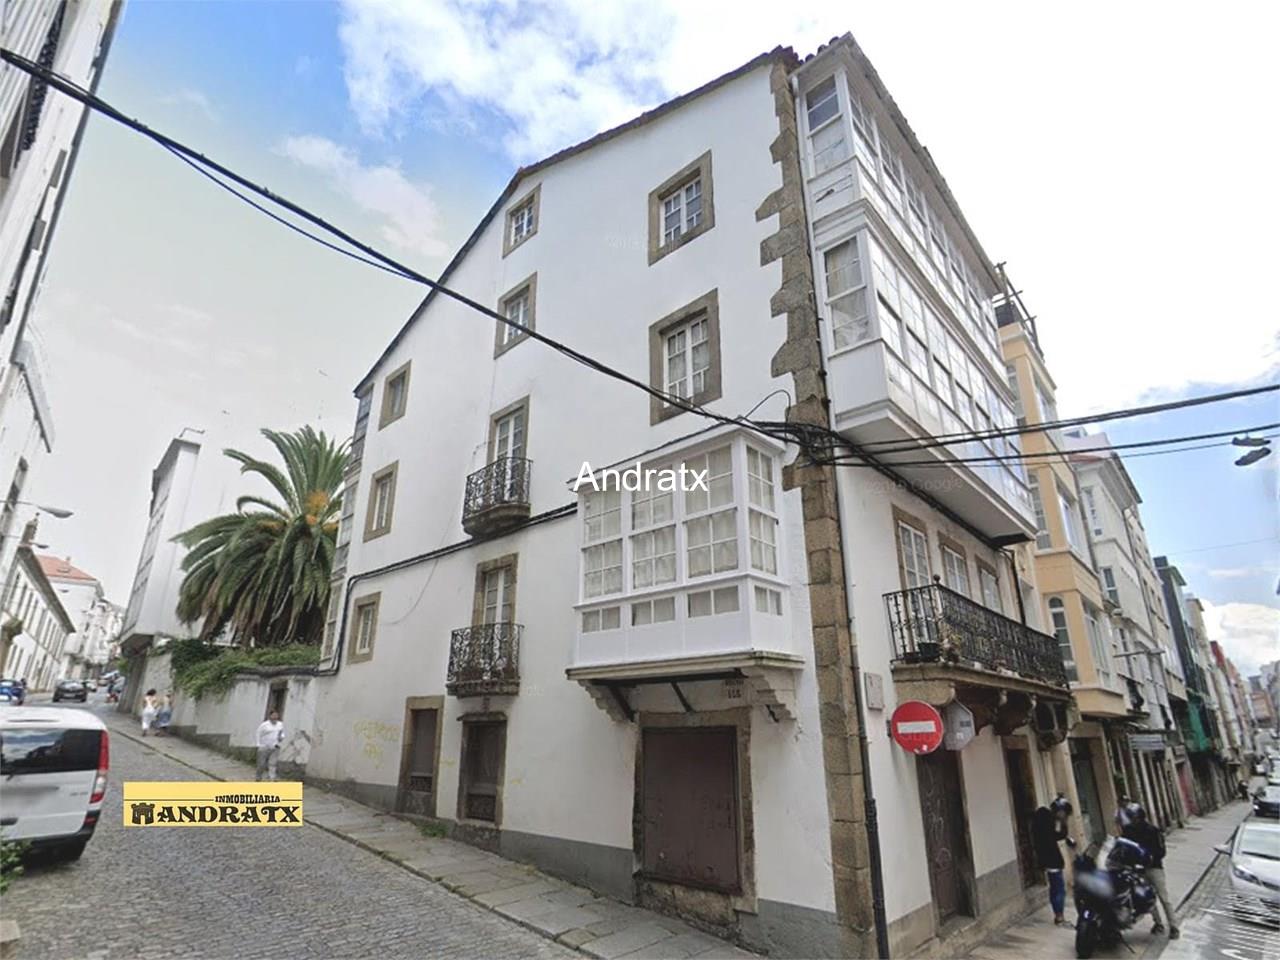 Foto 1 8767 Edificio haciendo esquina en el centro de Ferrol